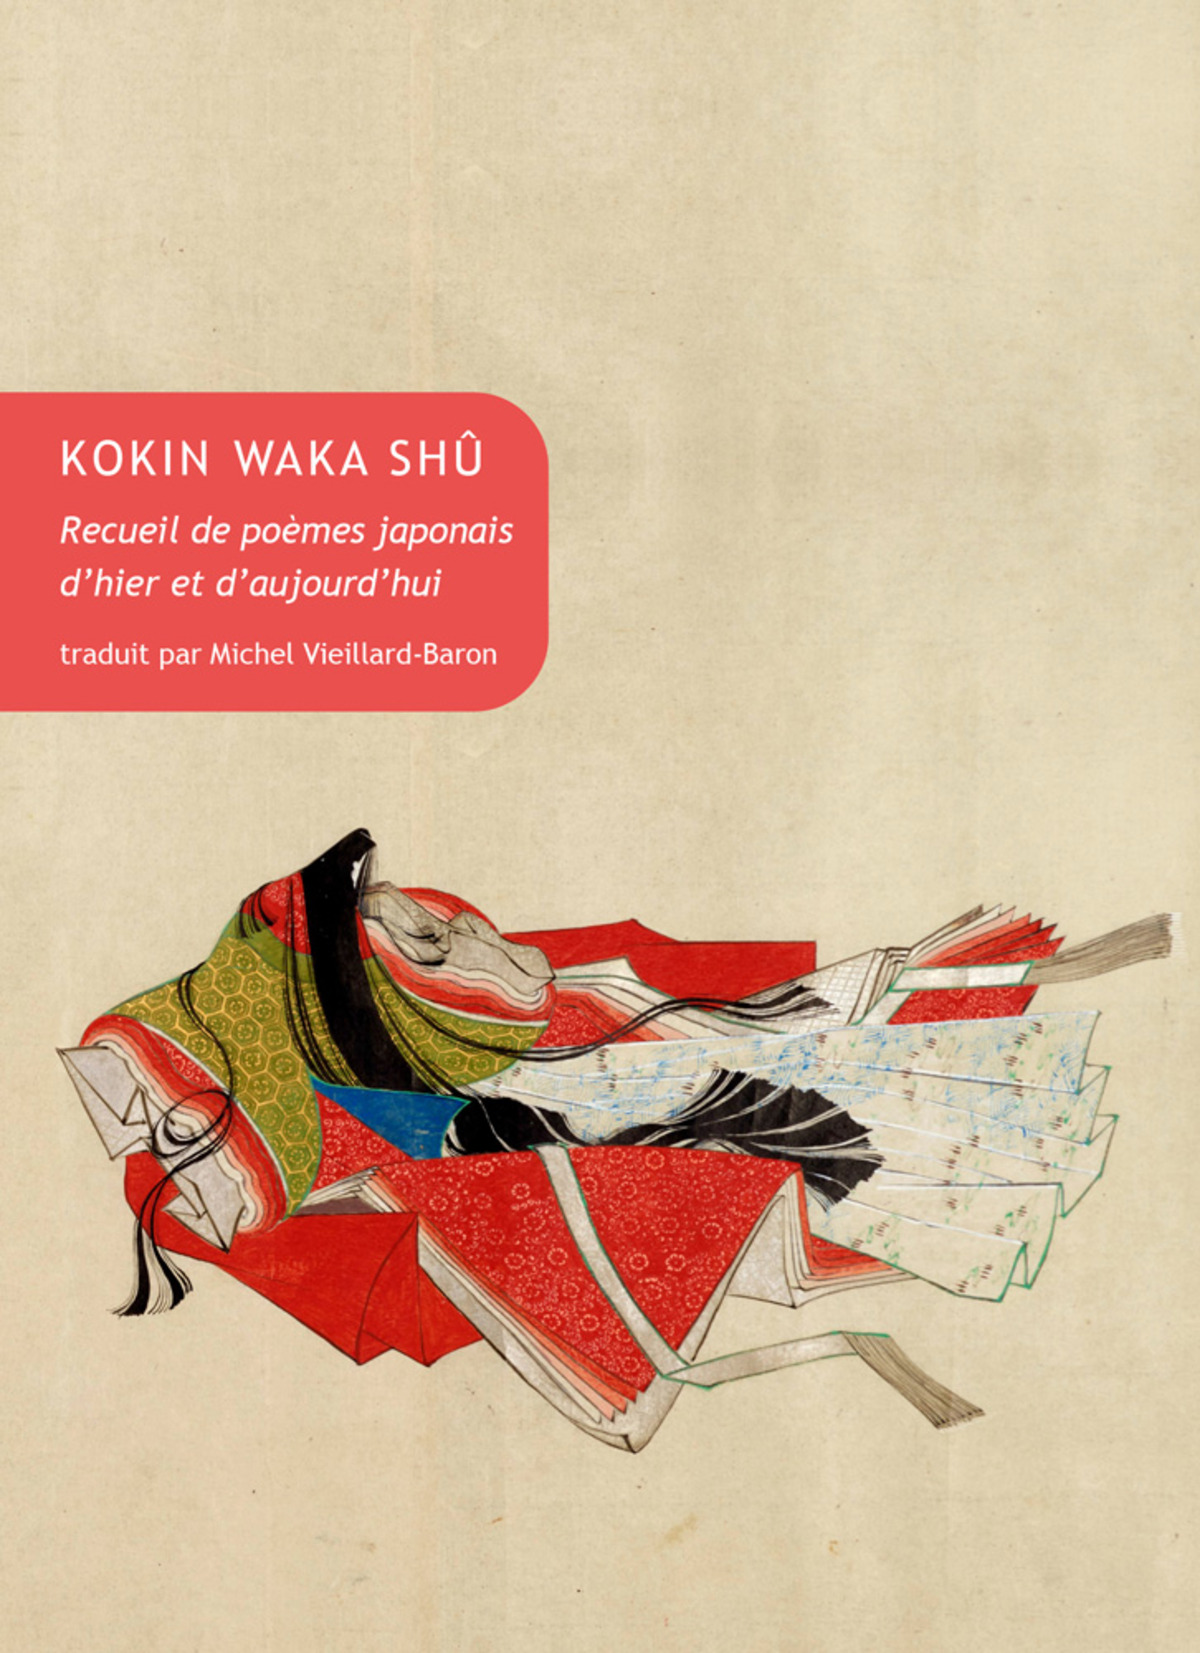 Le Kokin waka shû, recueil de poèmes japonais d’hier et d’aujourd’hui